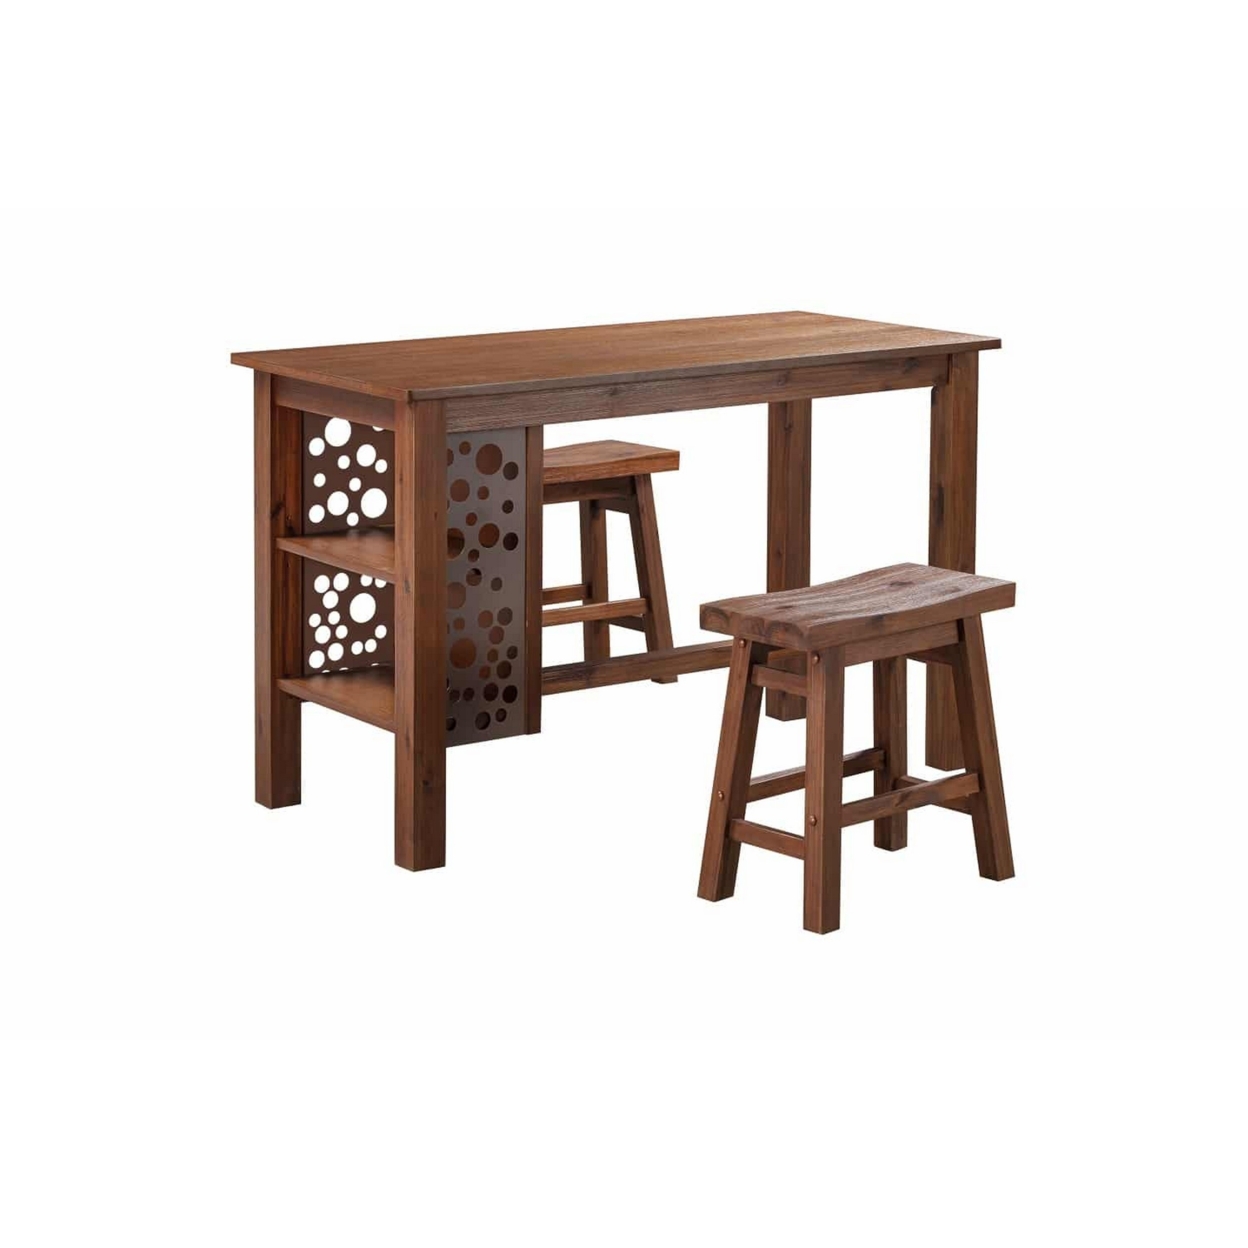 Bada 3 Piece Rectangular Dining Table Set, 2 Stools And 2 Shelves, Brown - Saltoro Sherpi